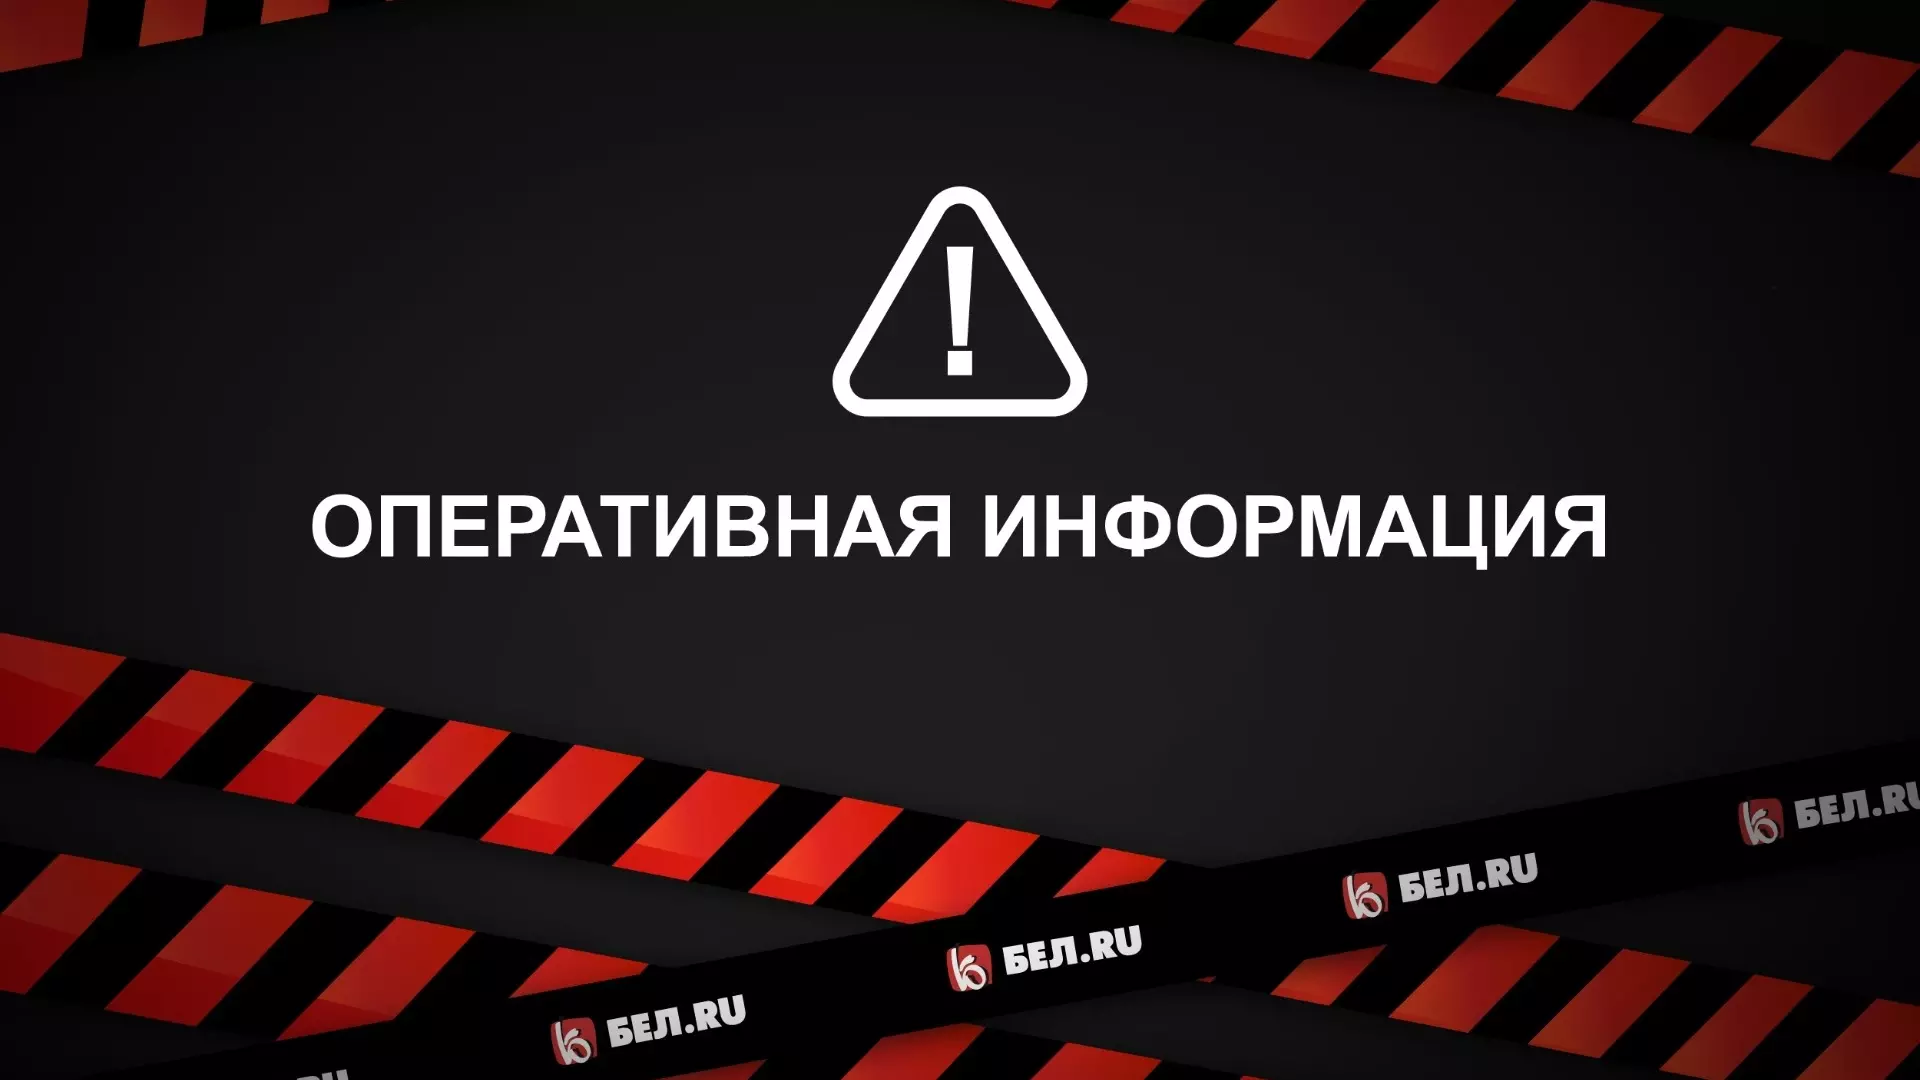 ВСУ обстреляли Новую Таволжанку в Белгородской области